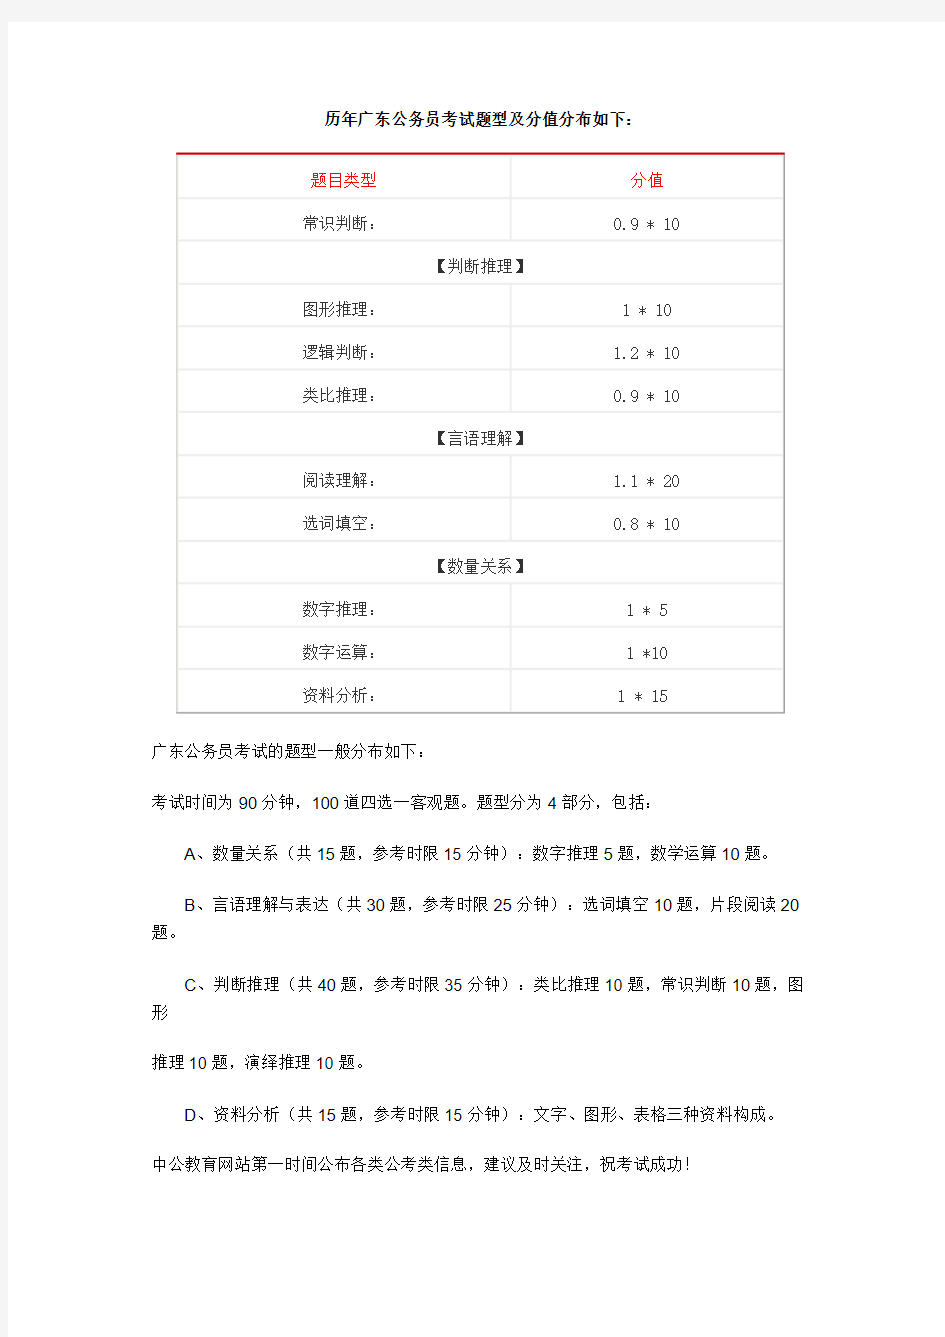 历年广东公务员考试题型及分值分布